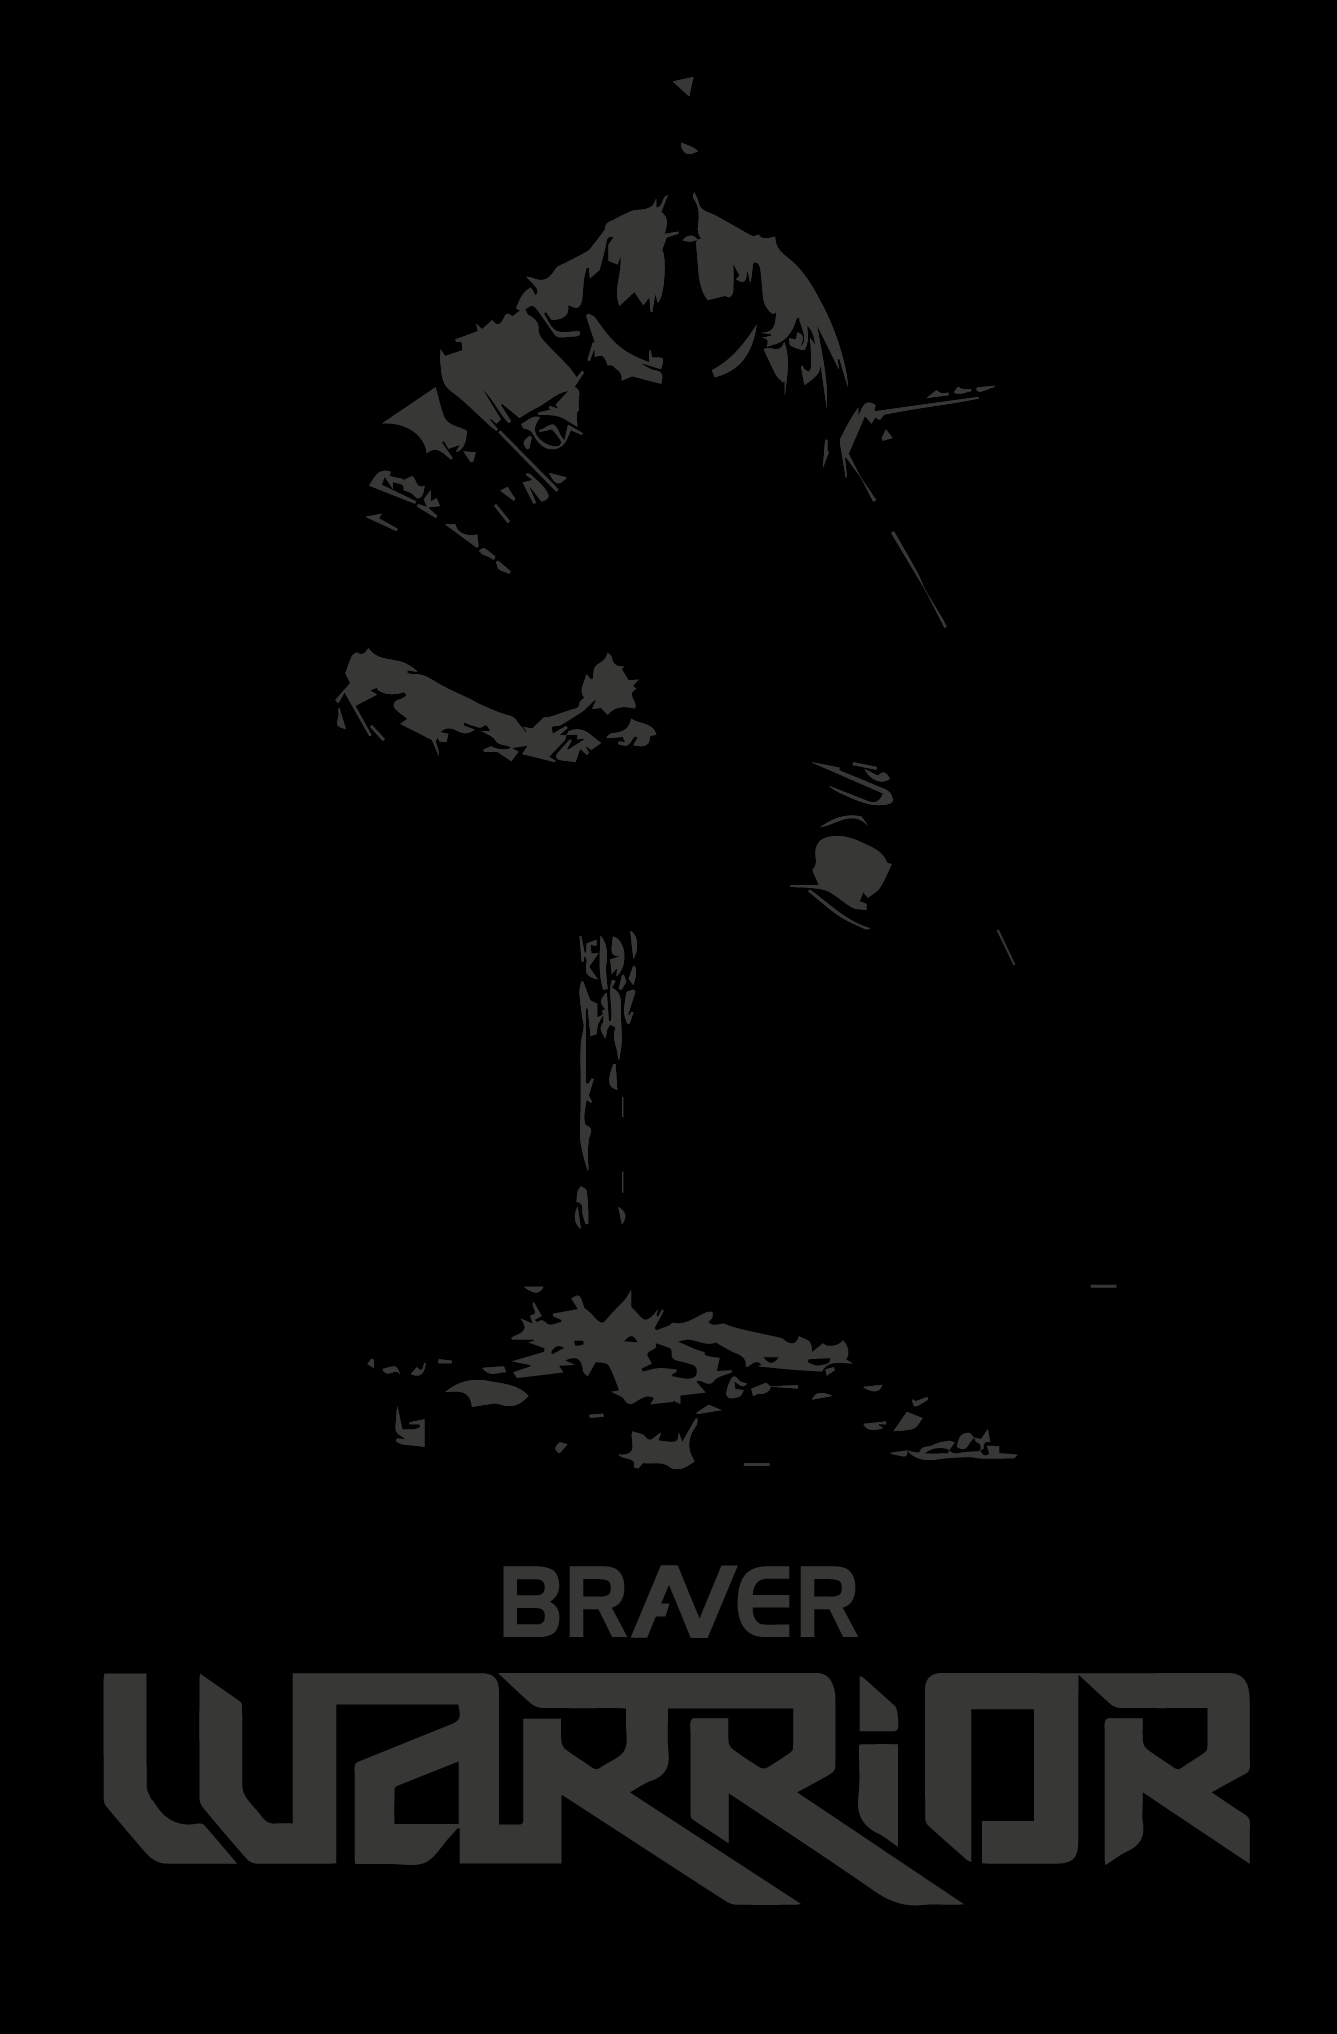 Braver Warrior